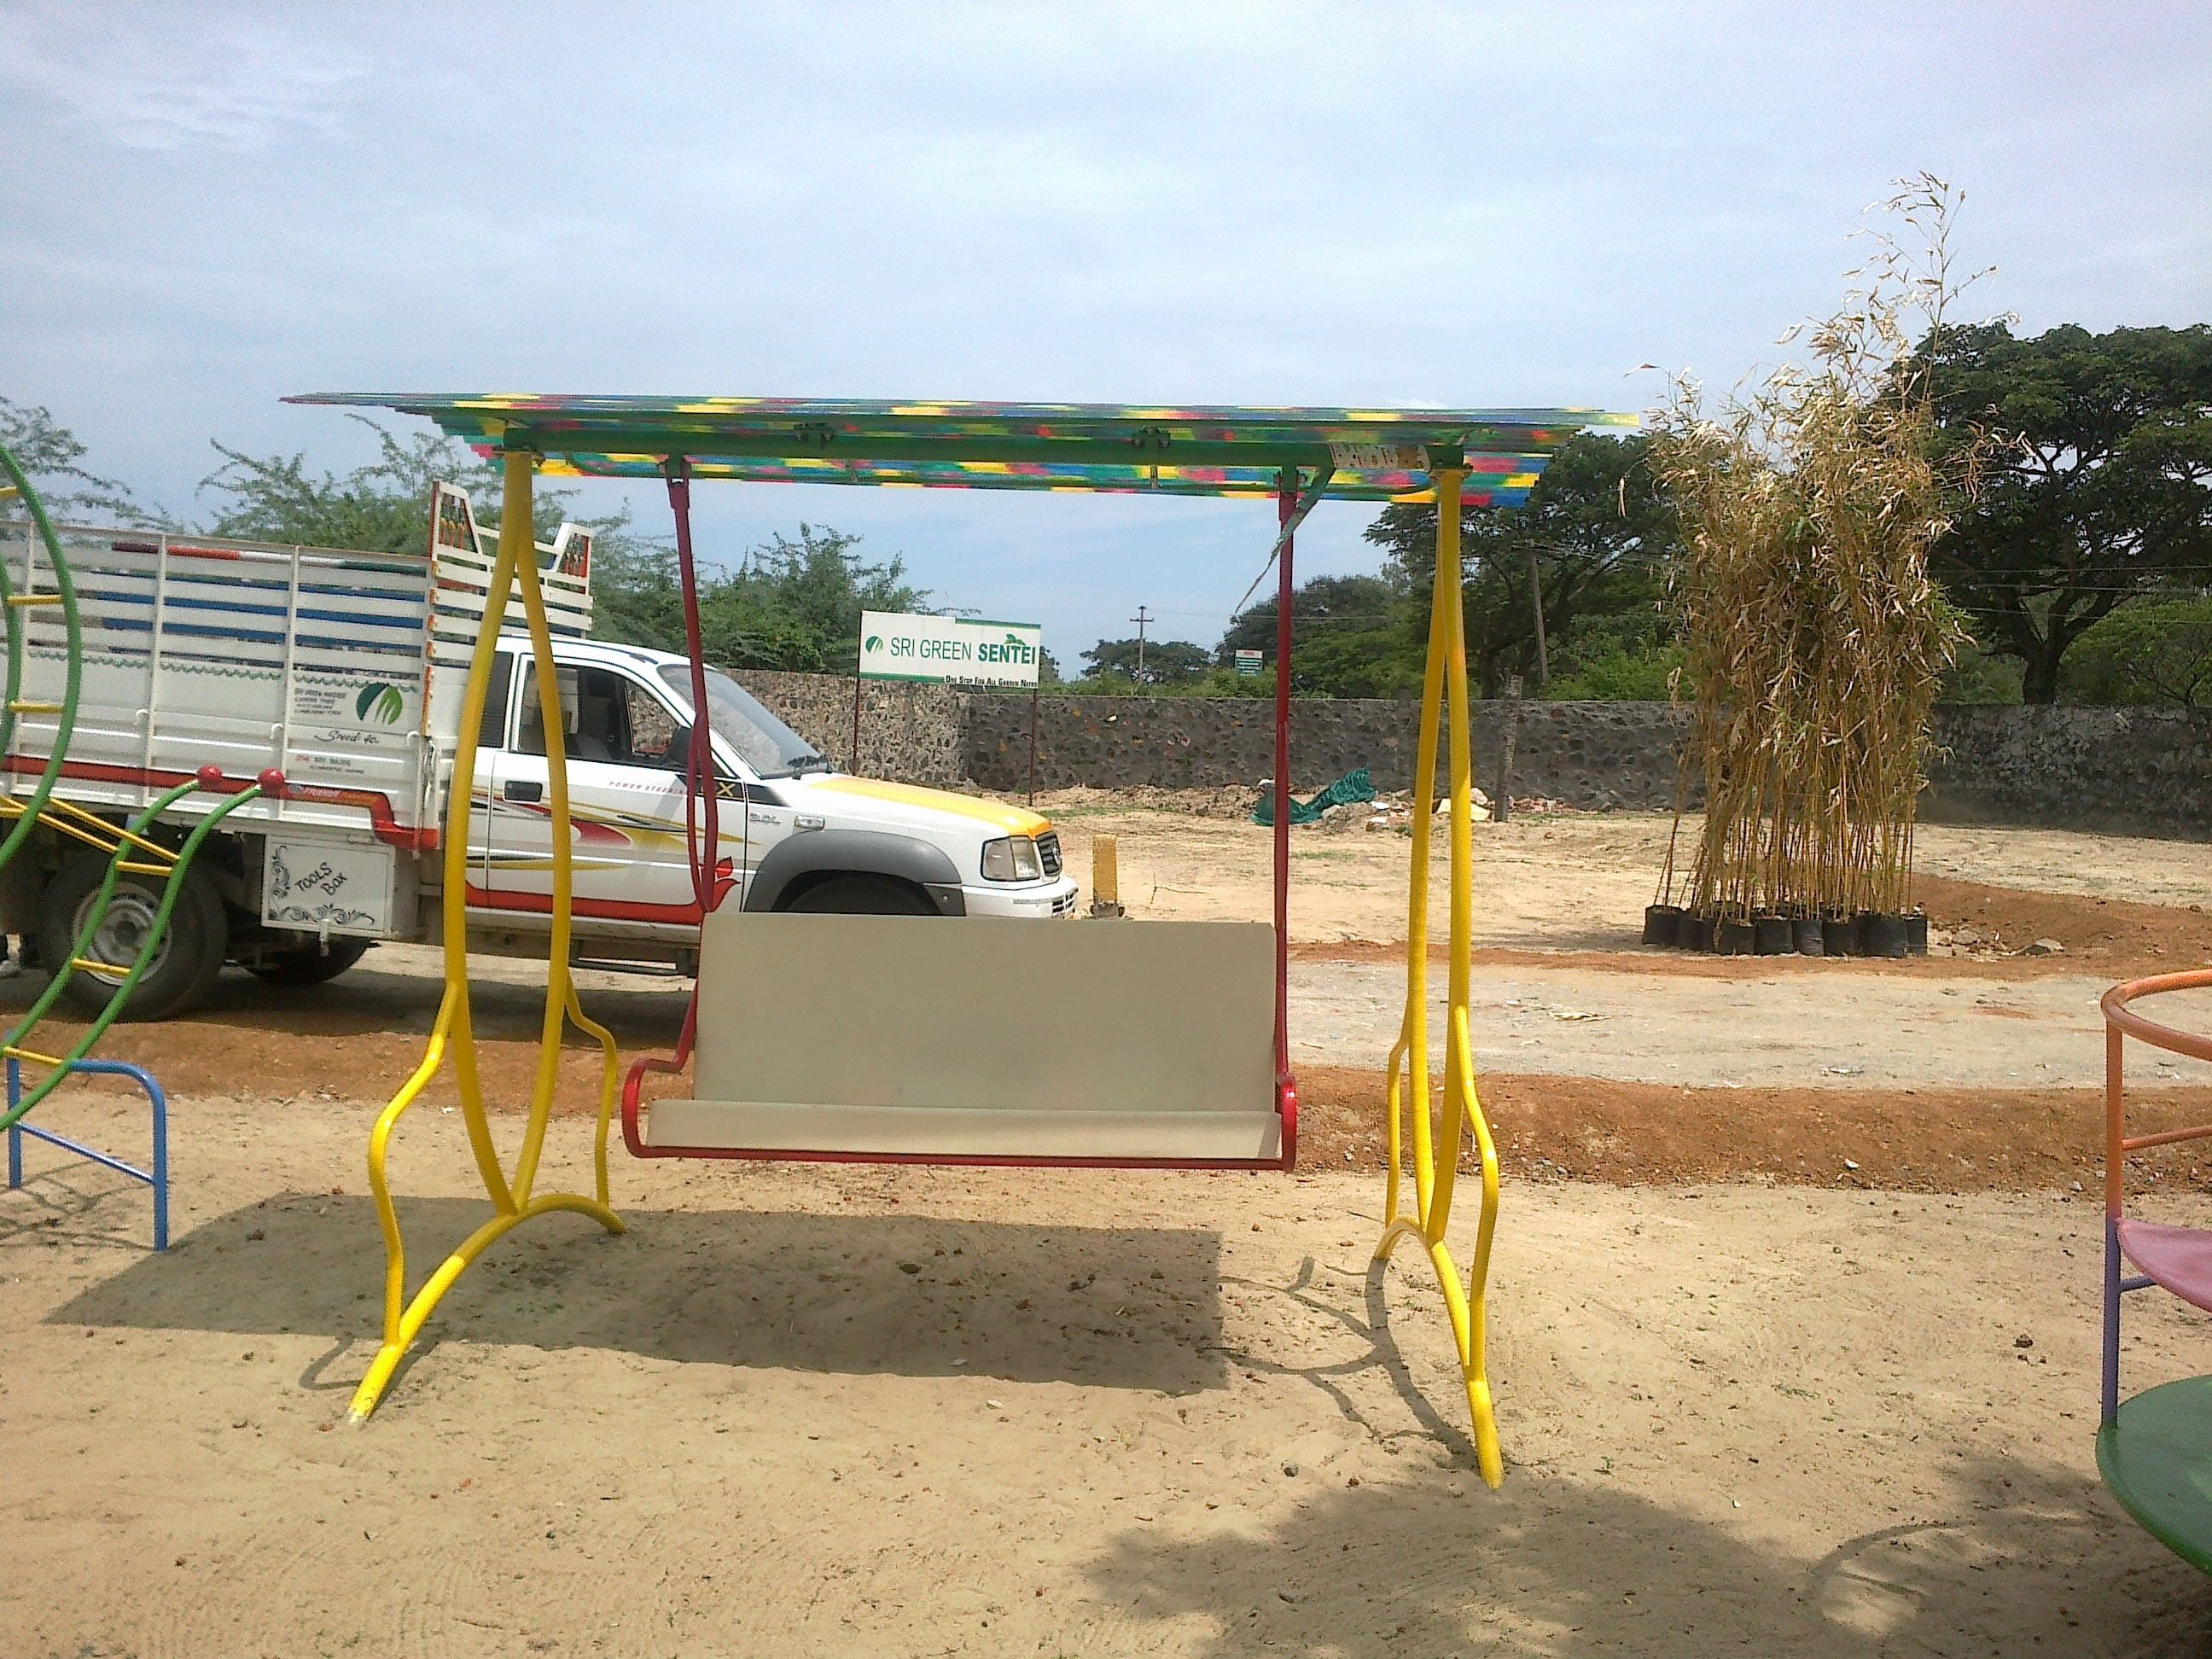 Rainbow Ladder Playground Equipment at Rs 20000/piece, Play Ground  Equipment & Garden Benches in Hyderabad